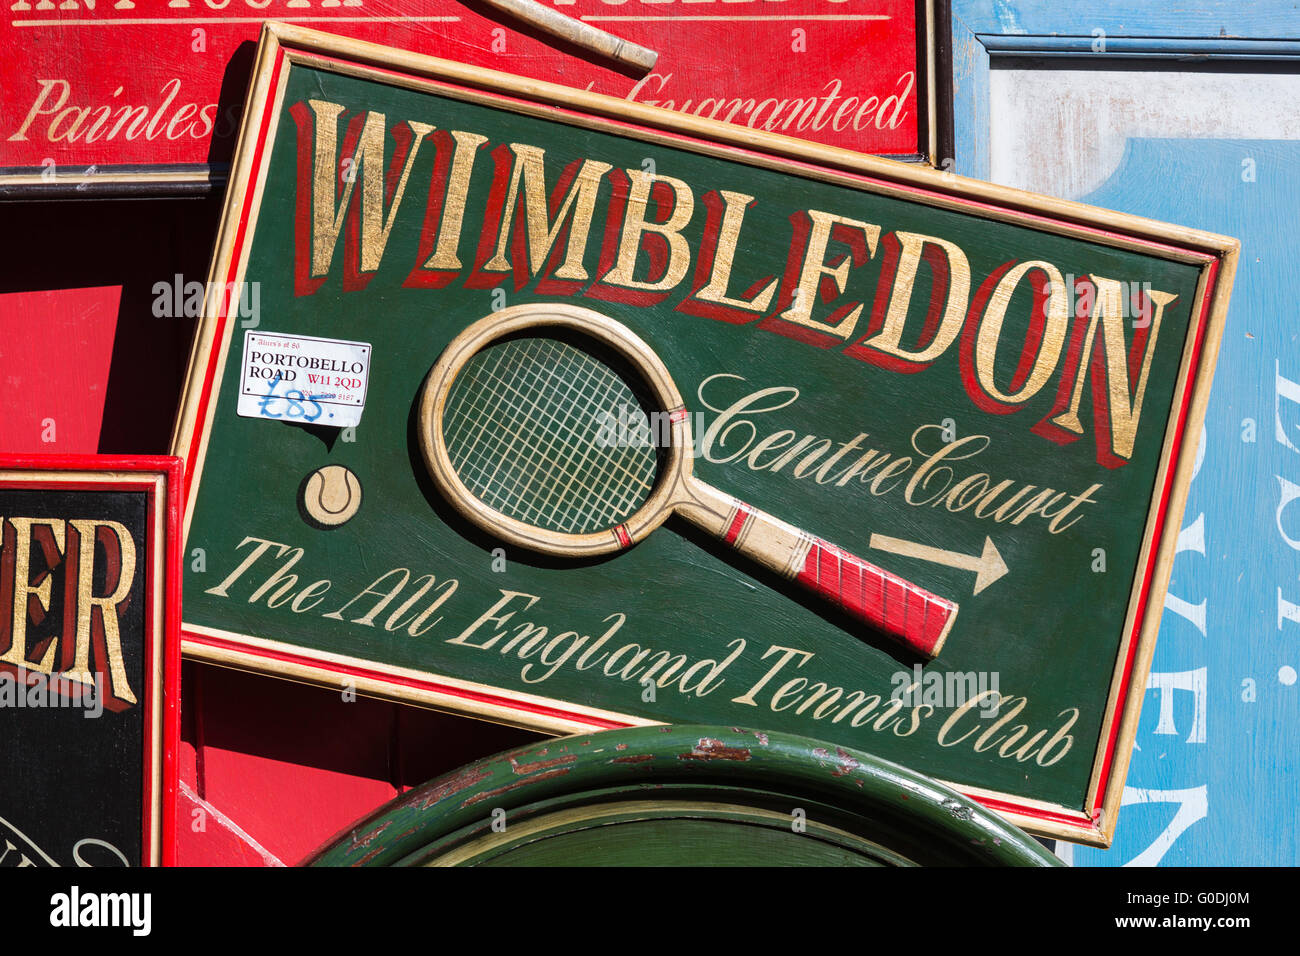 Tennis de Wimbledon en bois signe, Portobello Market, célèbre marché d'antiquités à Portobello Road, Notting Hill, London, England, UK Banque D'Images